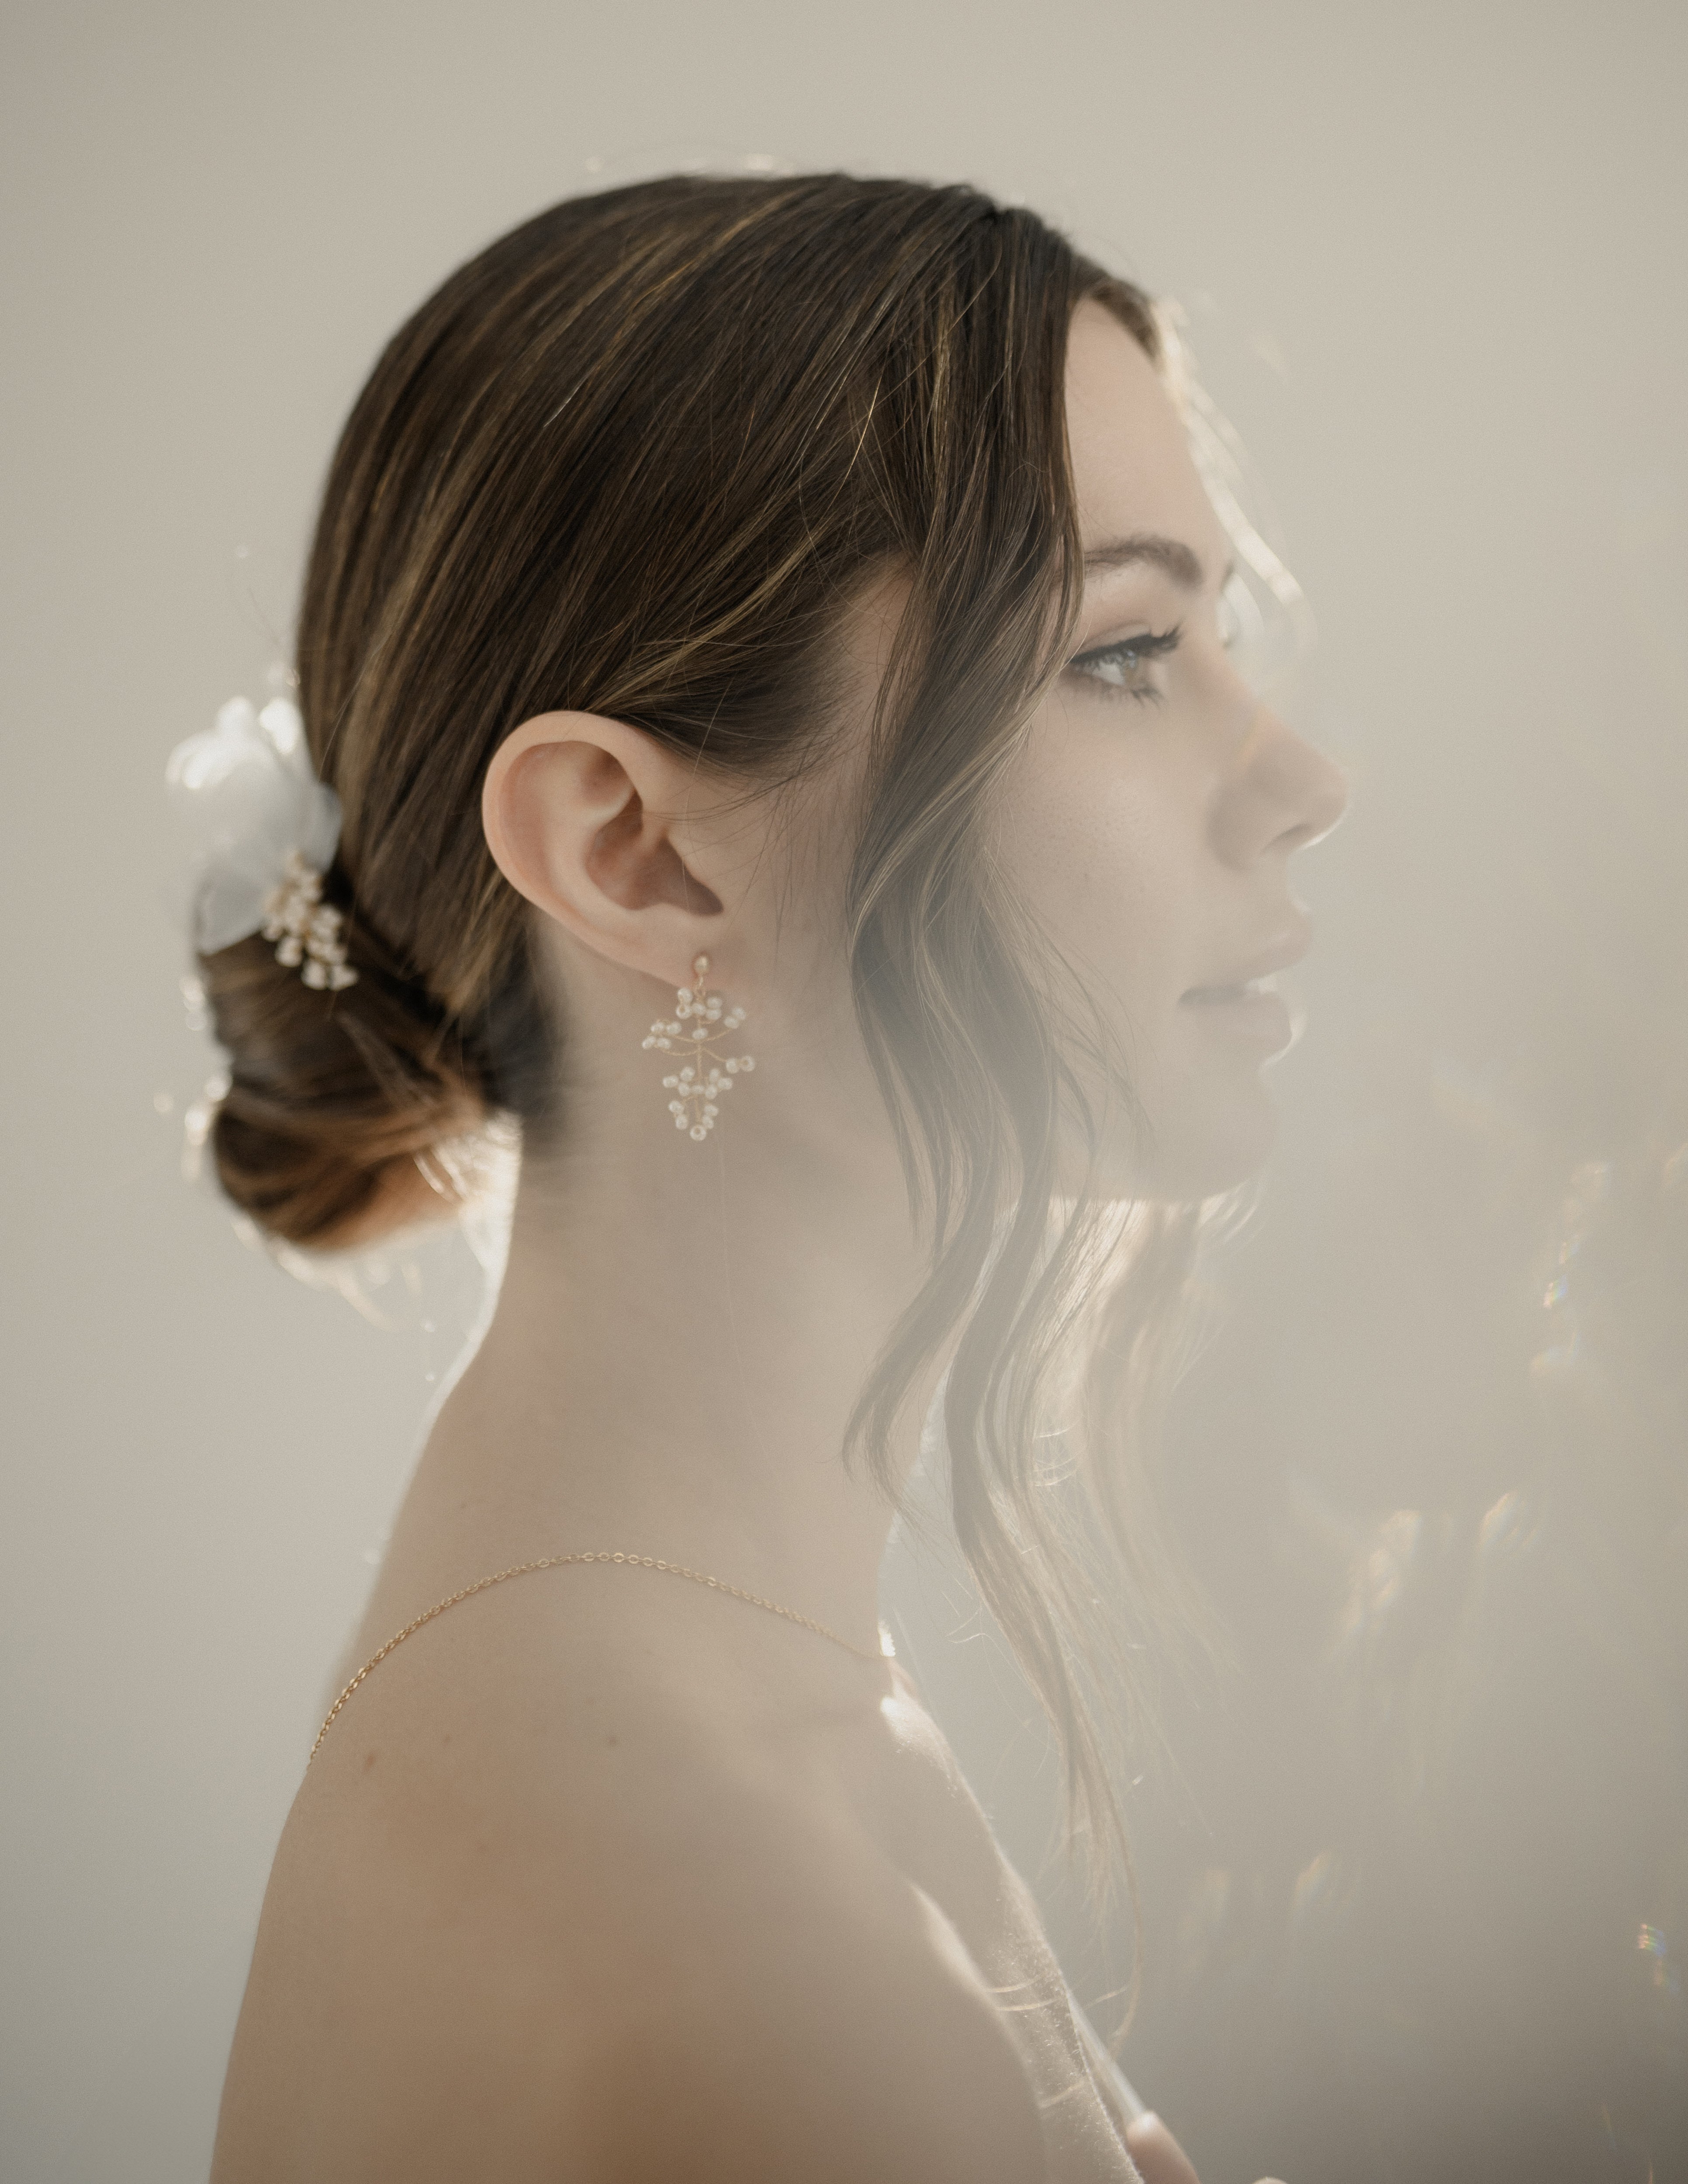 femme prise de profil portant une paire de boucles d'oreilles avec de la lumière à contre jour